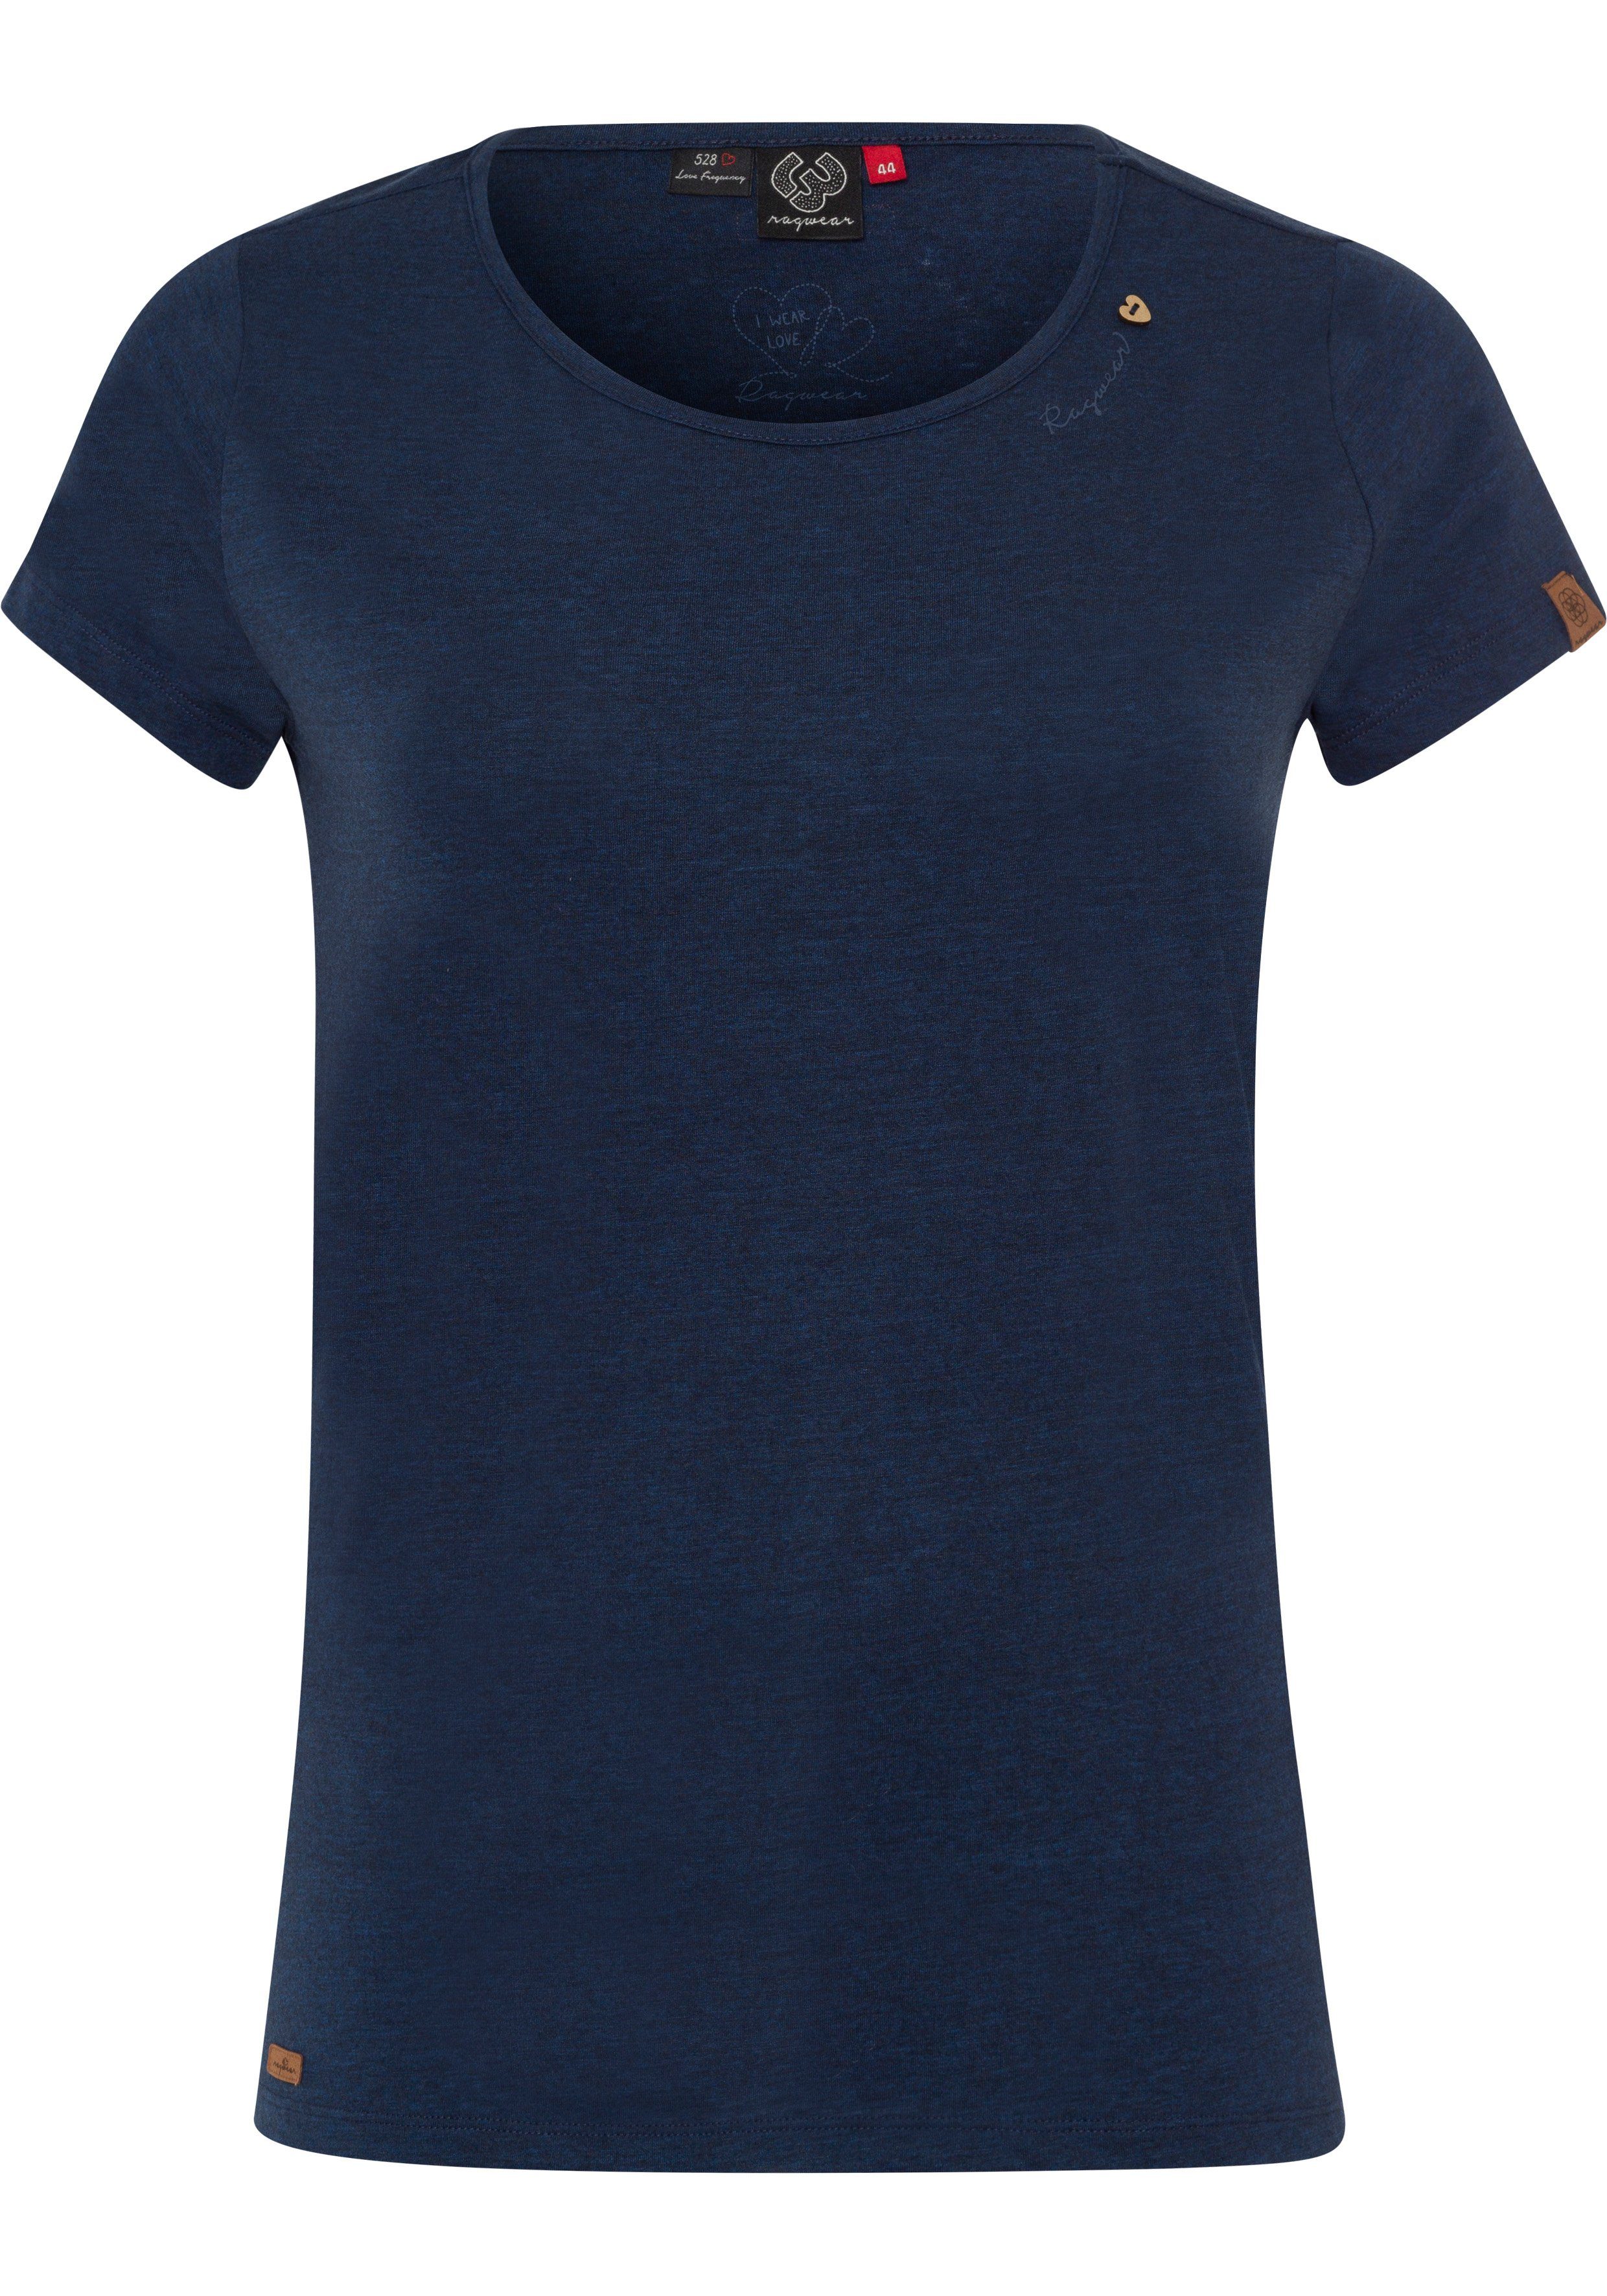 Ragwear Plus T-Shirt MINT A und PLUS 2028 natürlicher in mit Holzoptik Zierknopf-Applikation Logoschriftzug navy